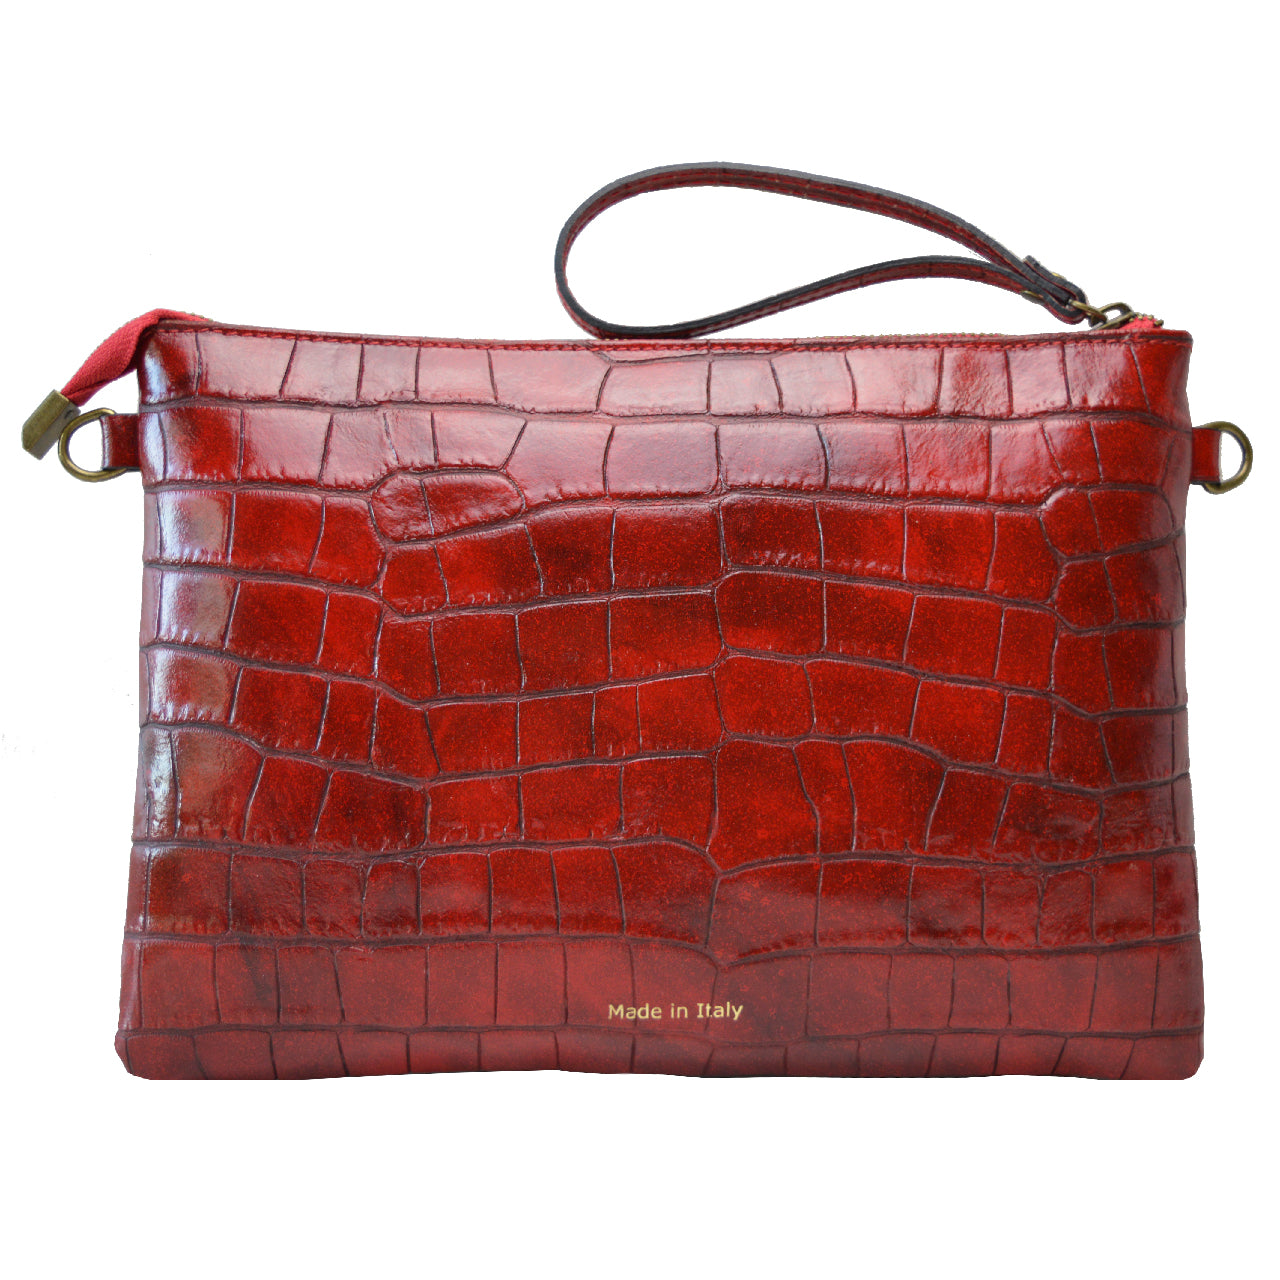 Pratesi Rufina Woman Bag in genuine Italian leather